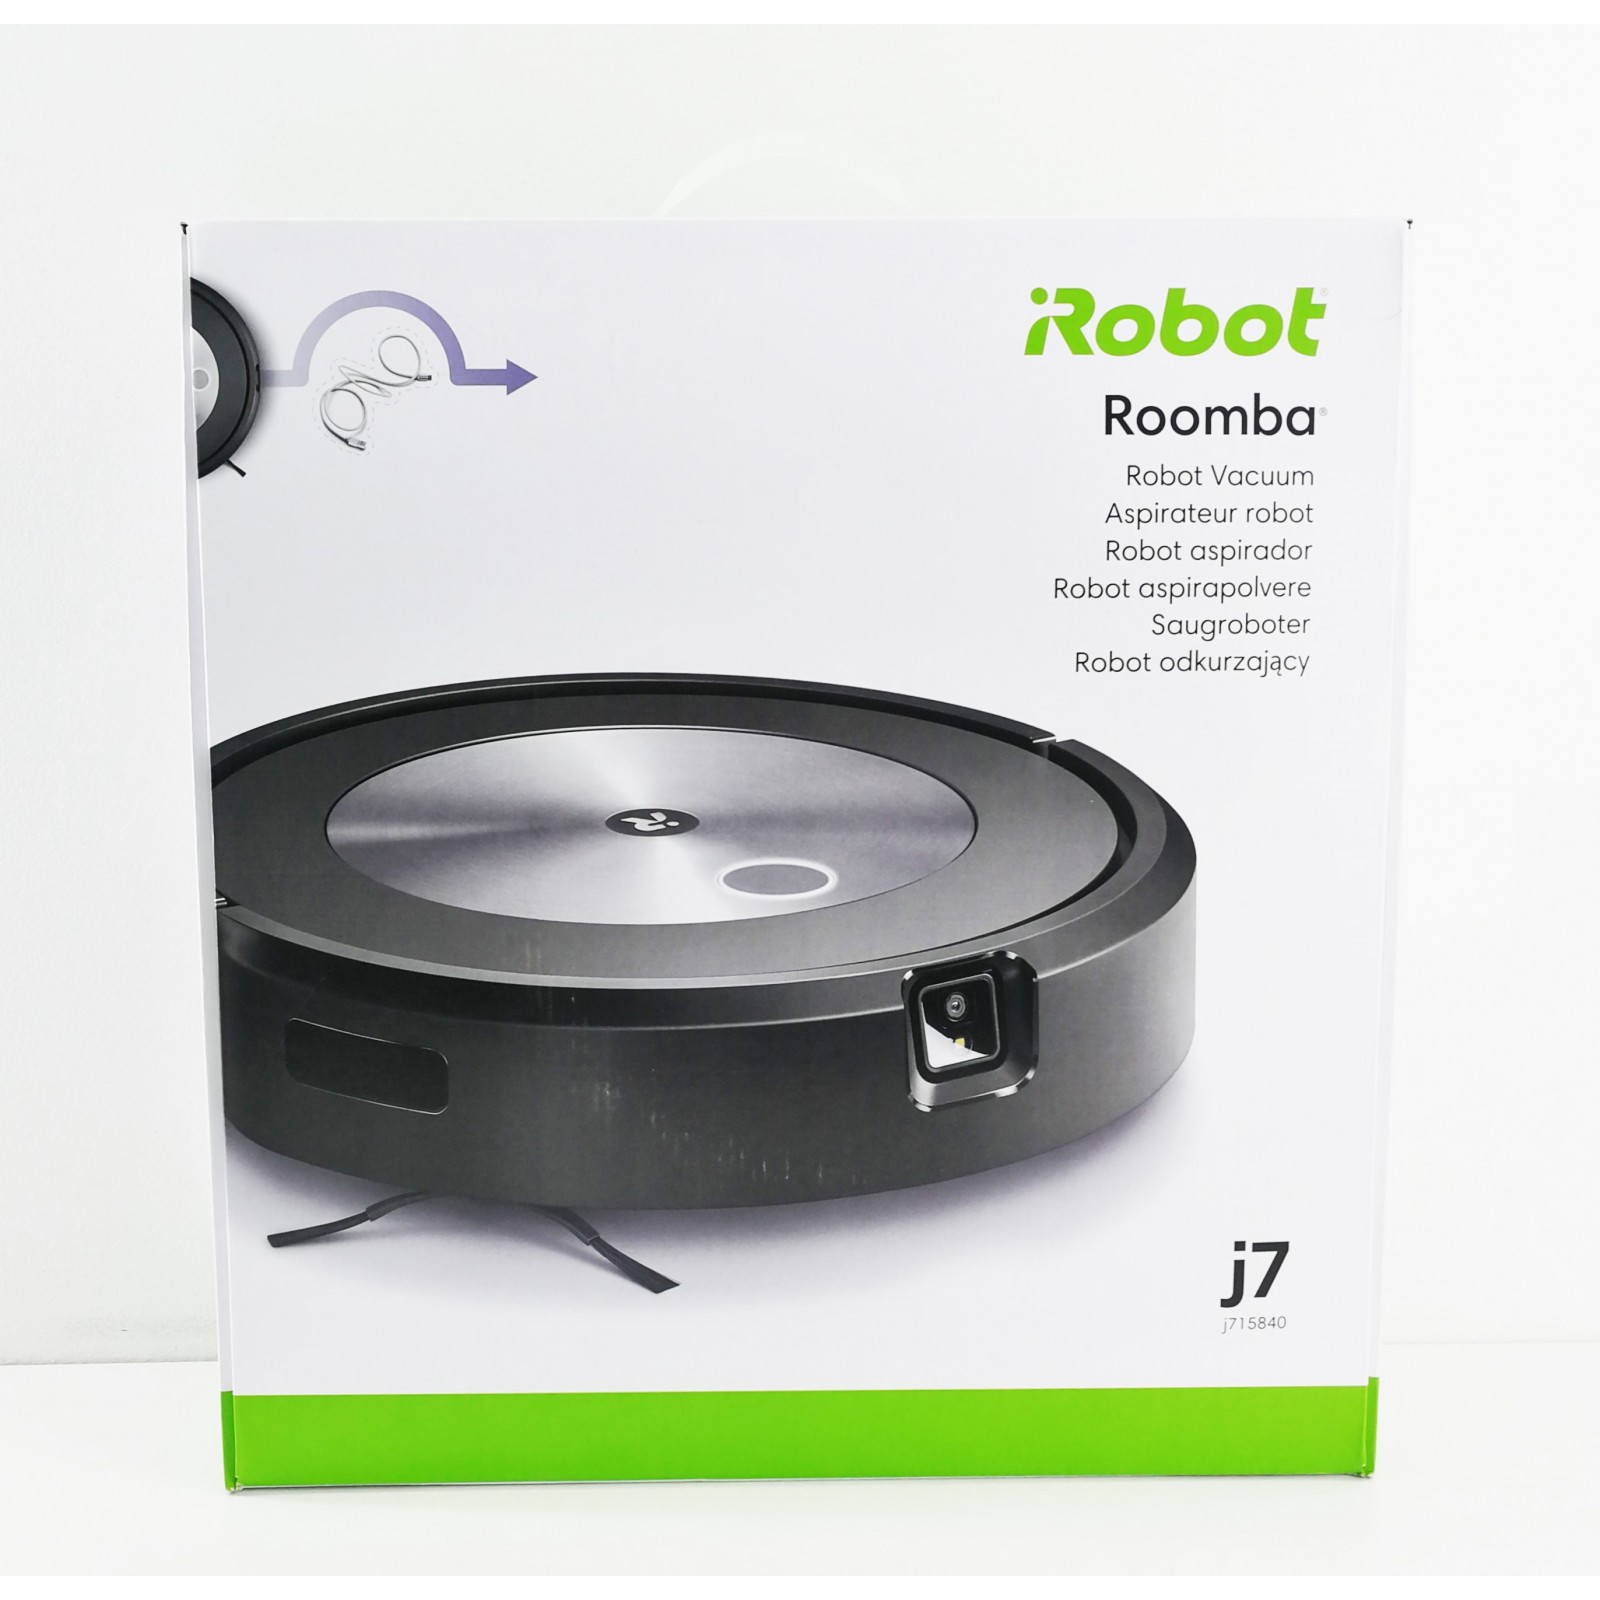 Robot aspirador ROOMBA J715840 nuevo precintado